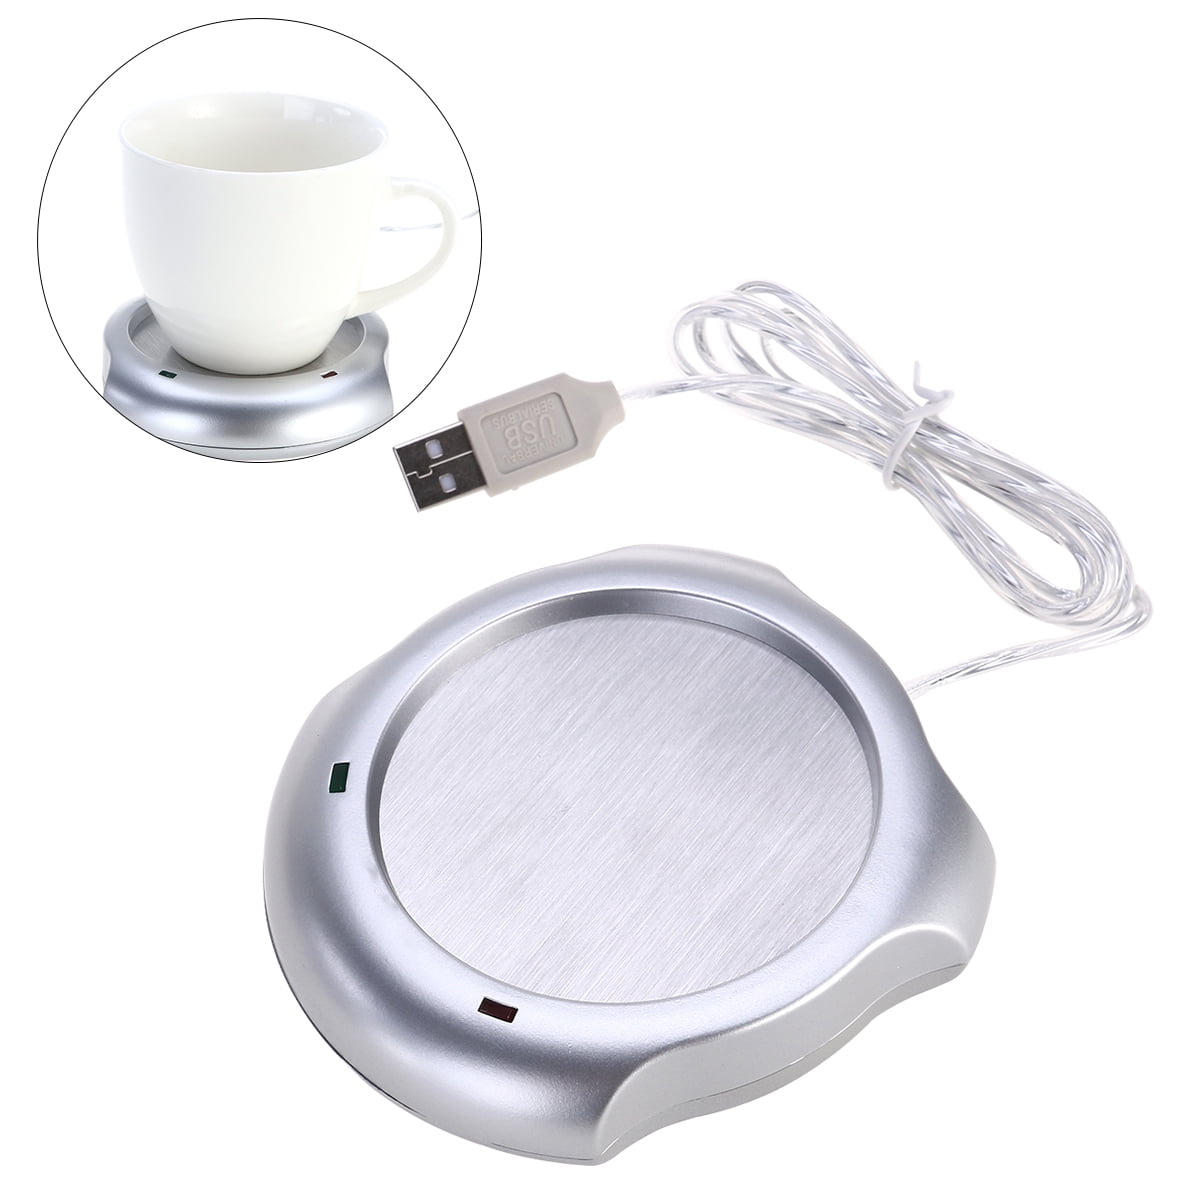 Etereauty Desktop USB Mug Warmer Electric Tea Coffee Cup Warmer Heater Plate for Desk, Size: 3.94 x 3.94 x 0.79, Silver